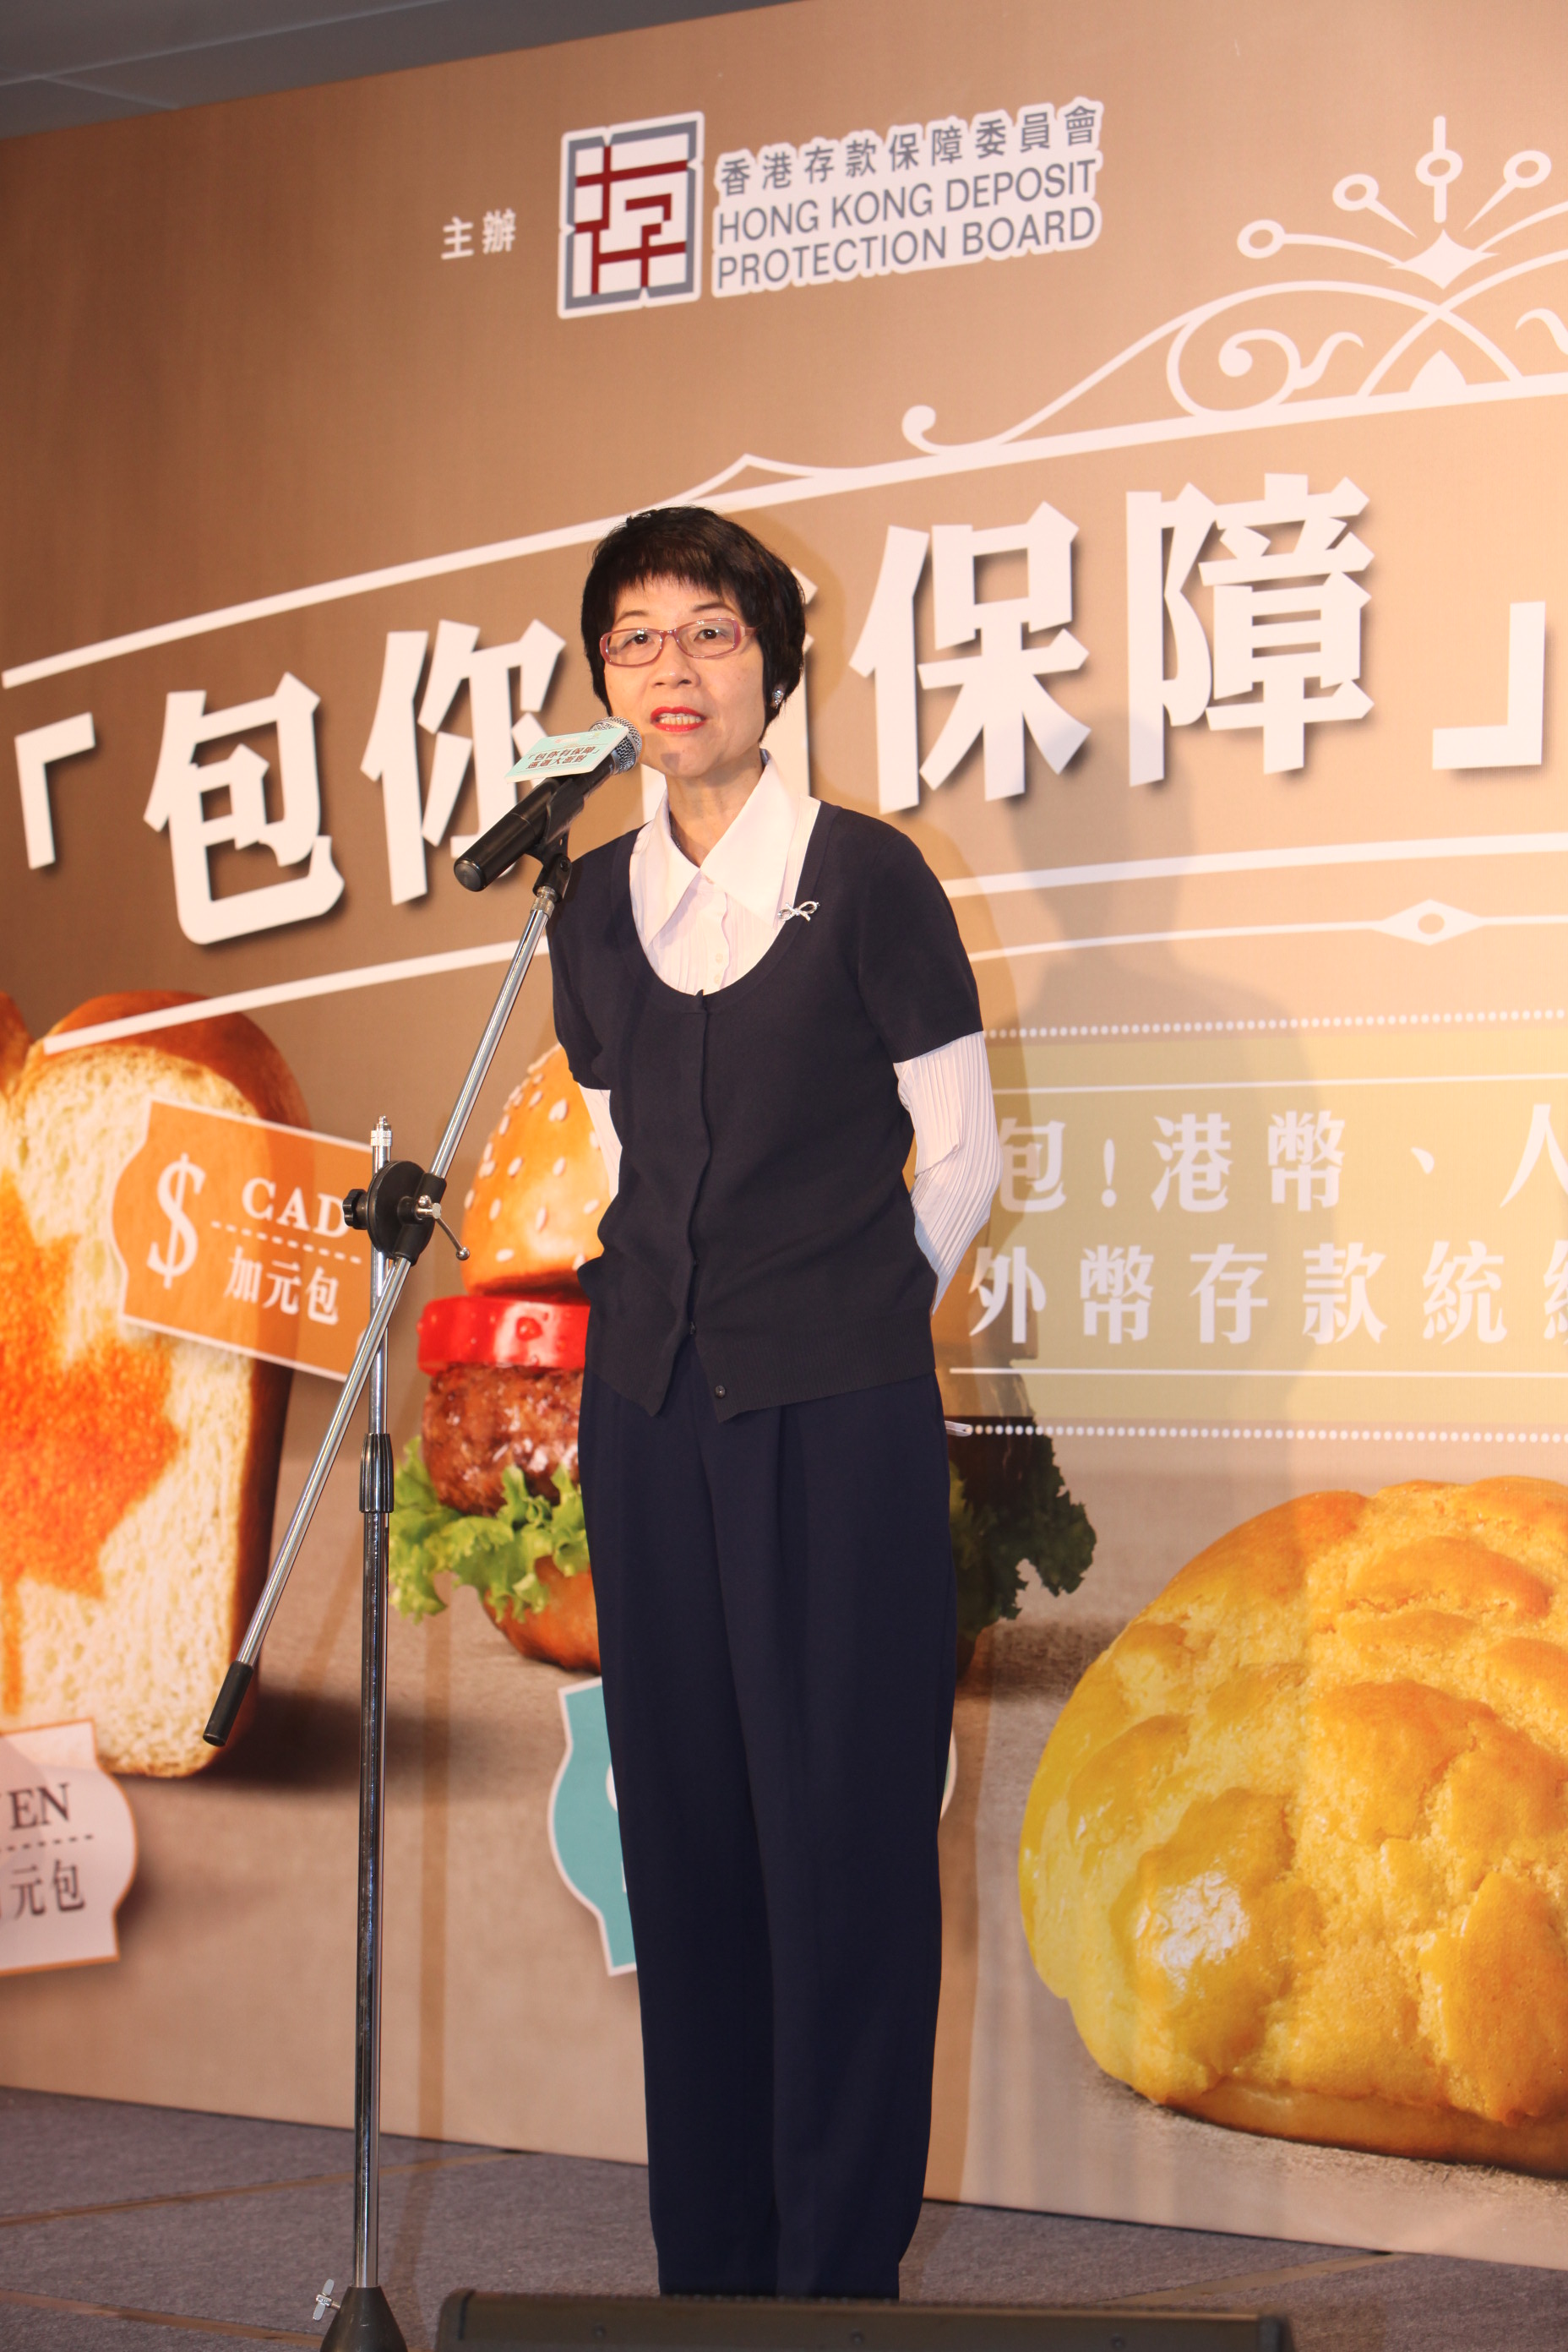 图一: 存保会主席陈黄穗女士在【『包你有保障』巡回大派对】活动上致辞。